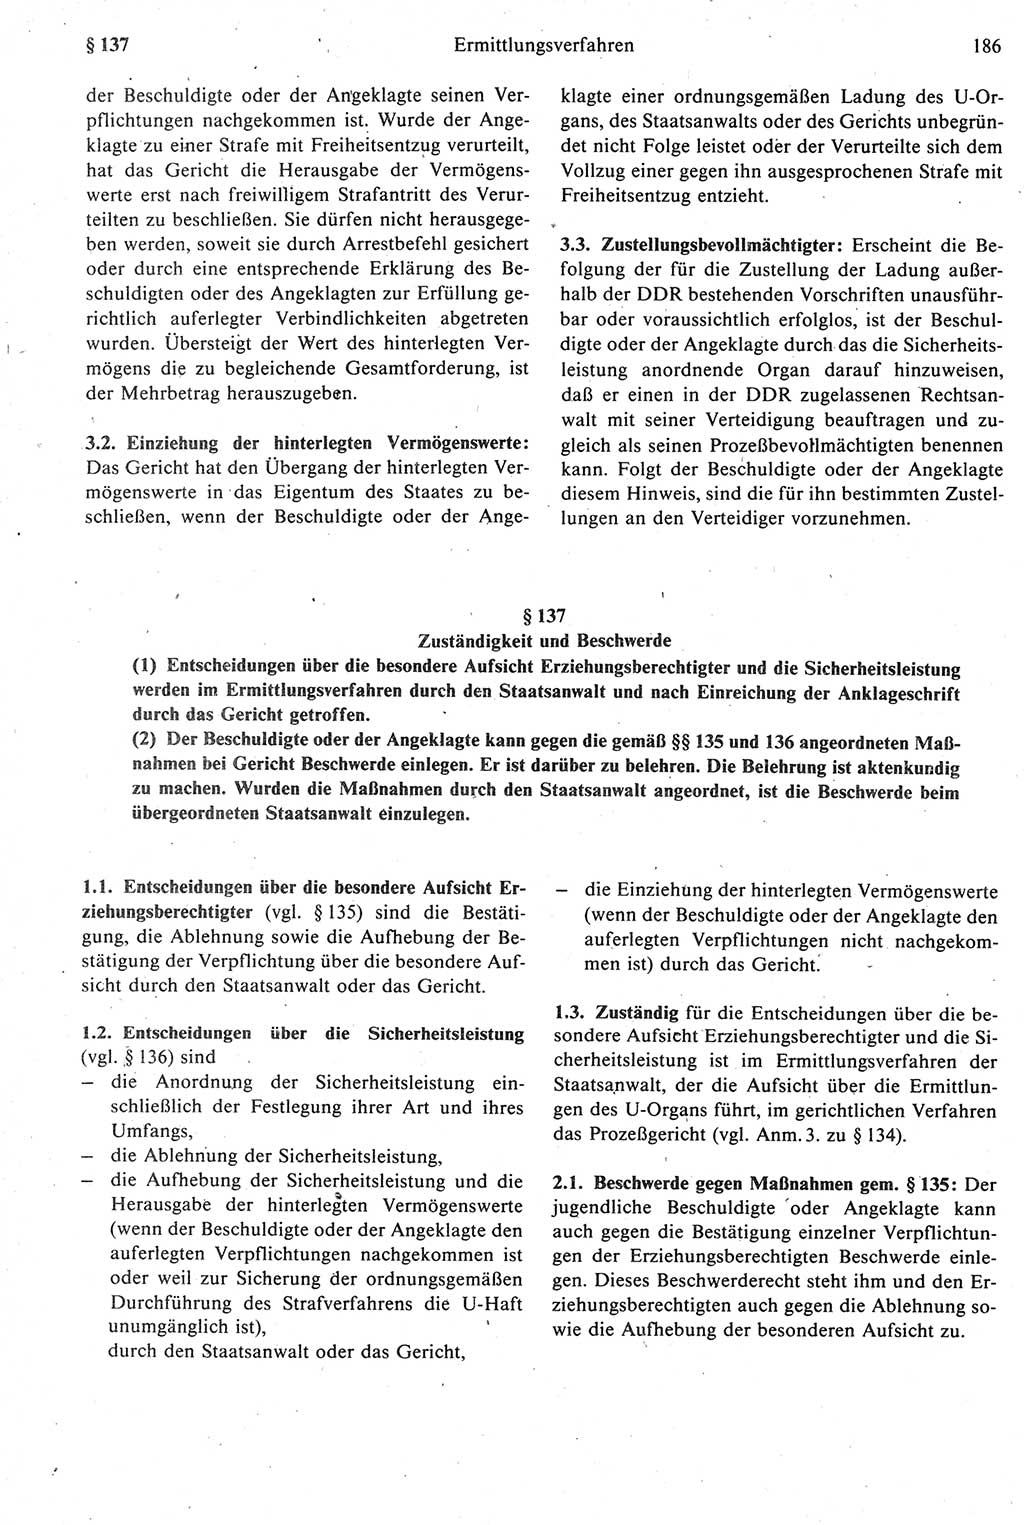 Strafprozeßrecht der DDR [Deutsche Demokratische Republik], Kommentar zur Strafprozeßordnung (StPO) 1987, Seite 186 (Strafprozeßr. DDR Komm. StPO 1987, S. 186)